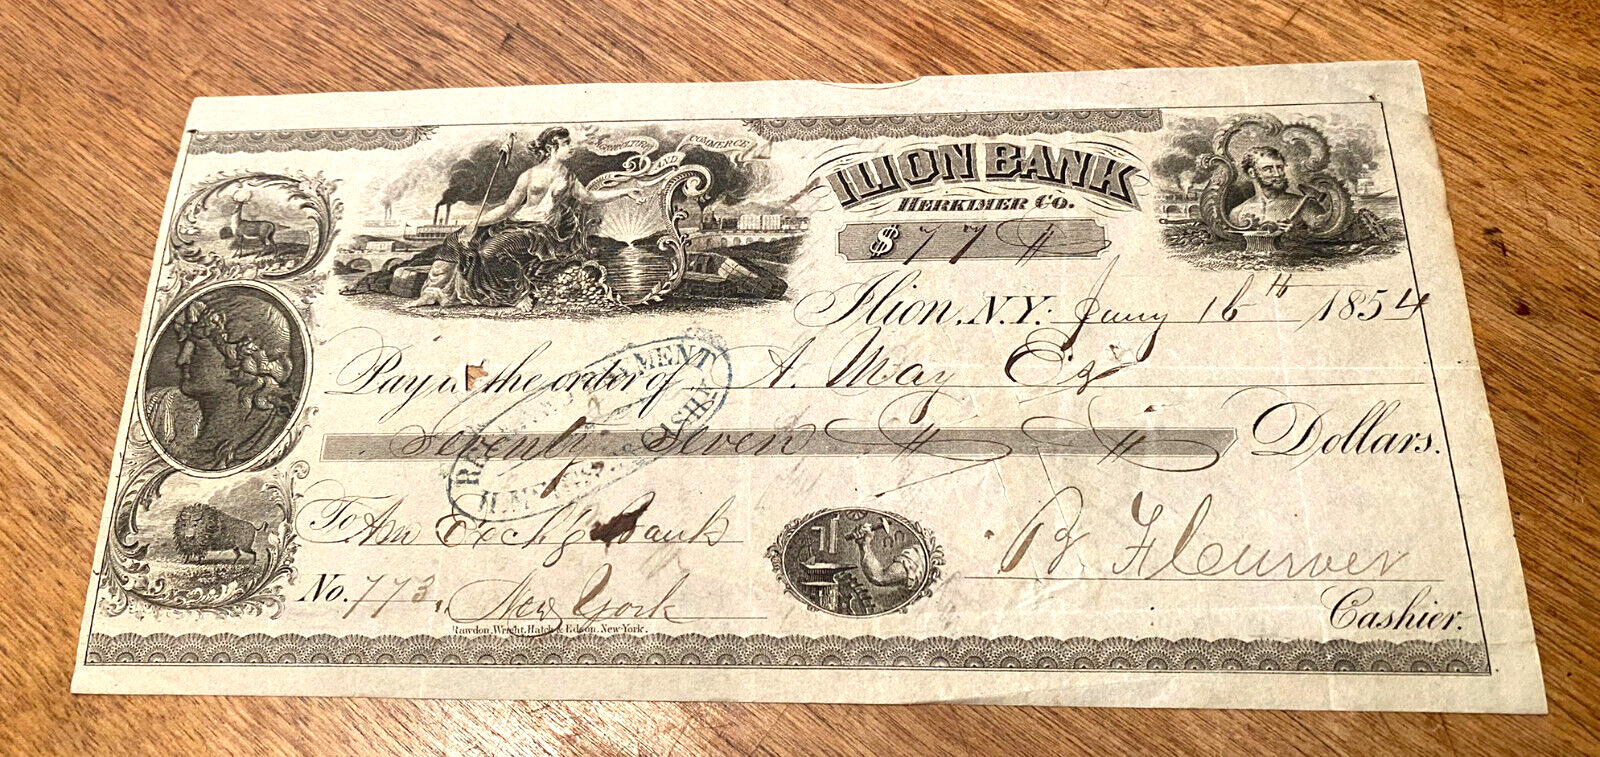 1854 Bank Check Ilion Bank New York, large fantastic vignettes, margins